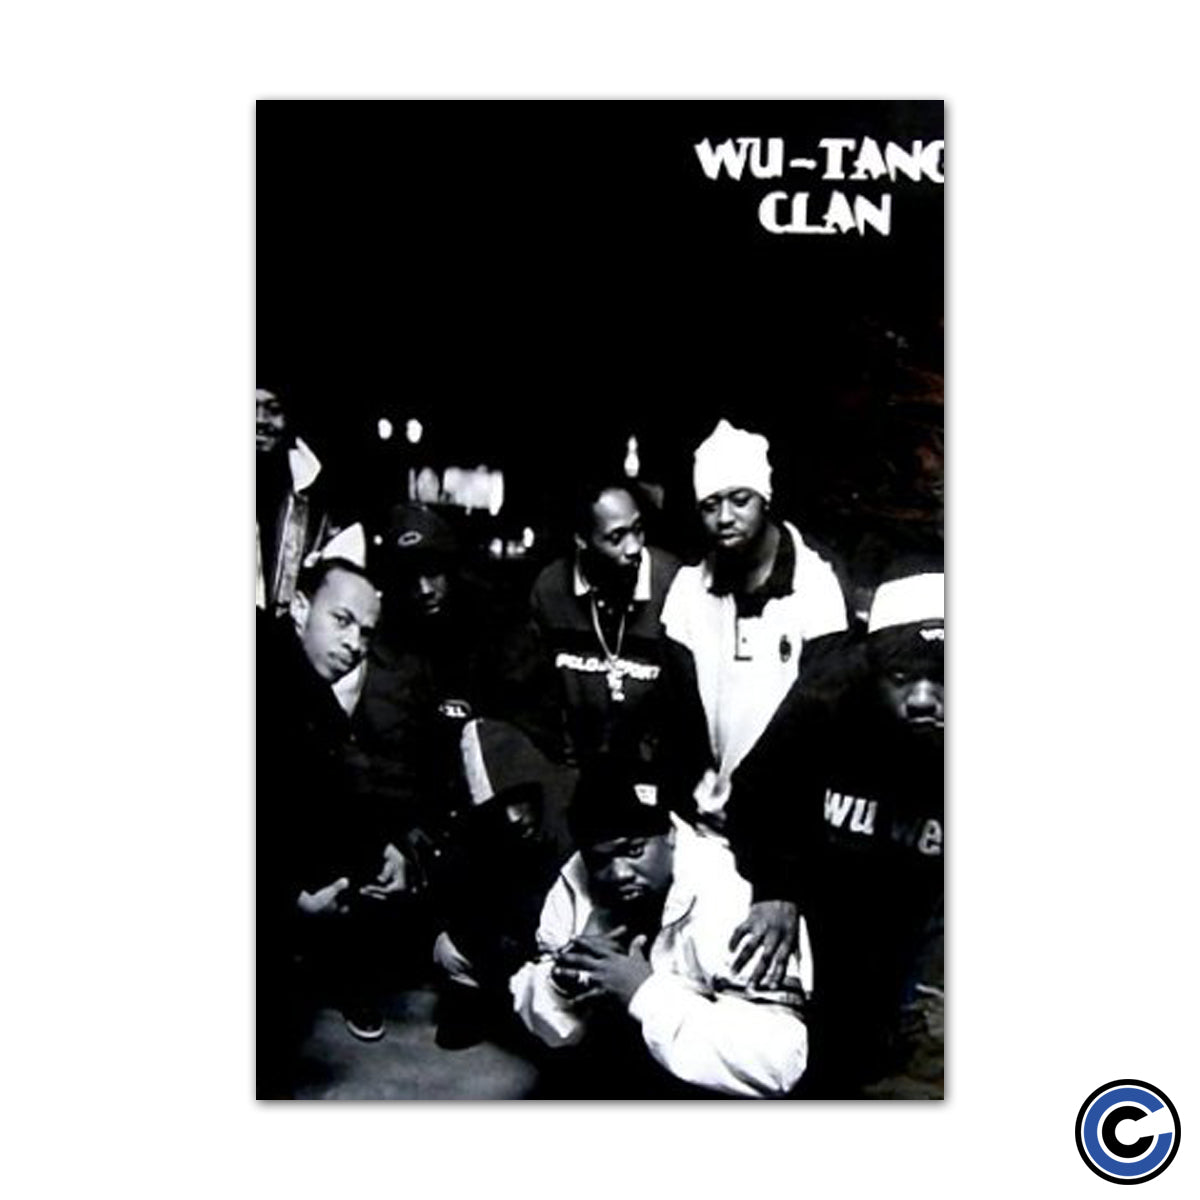 Wu-Tang Clan "Group" Poster